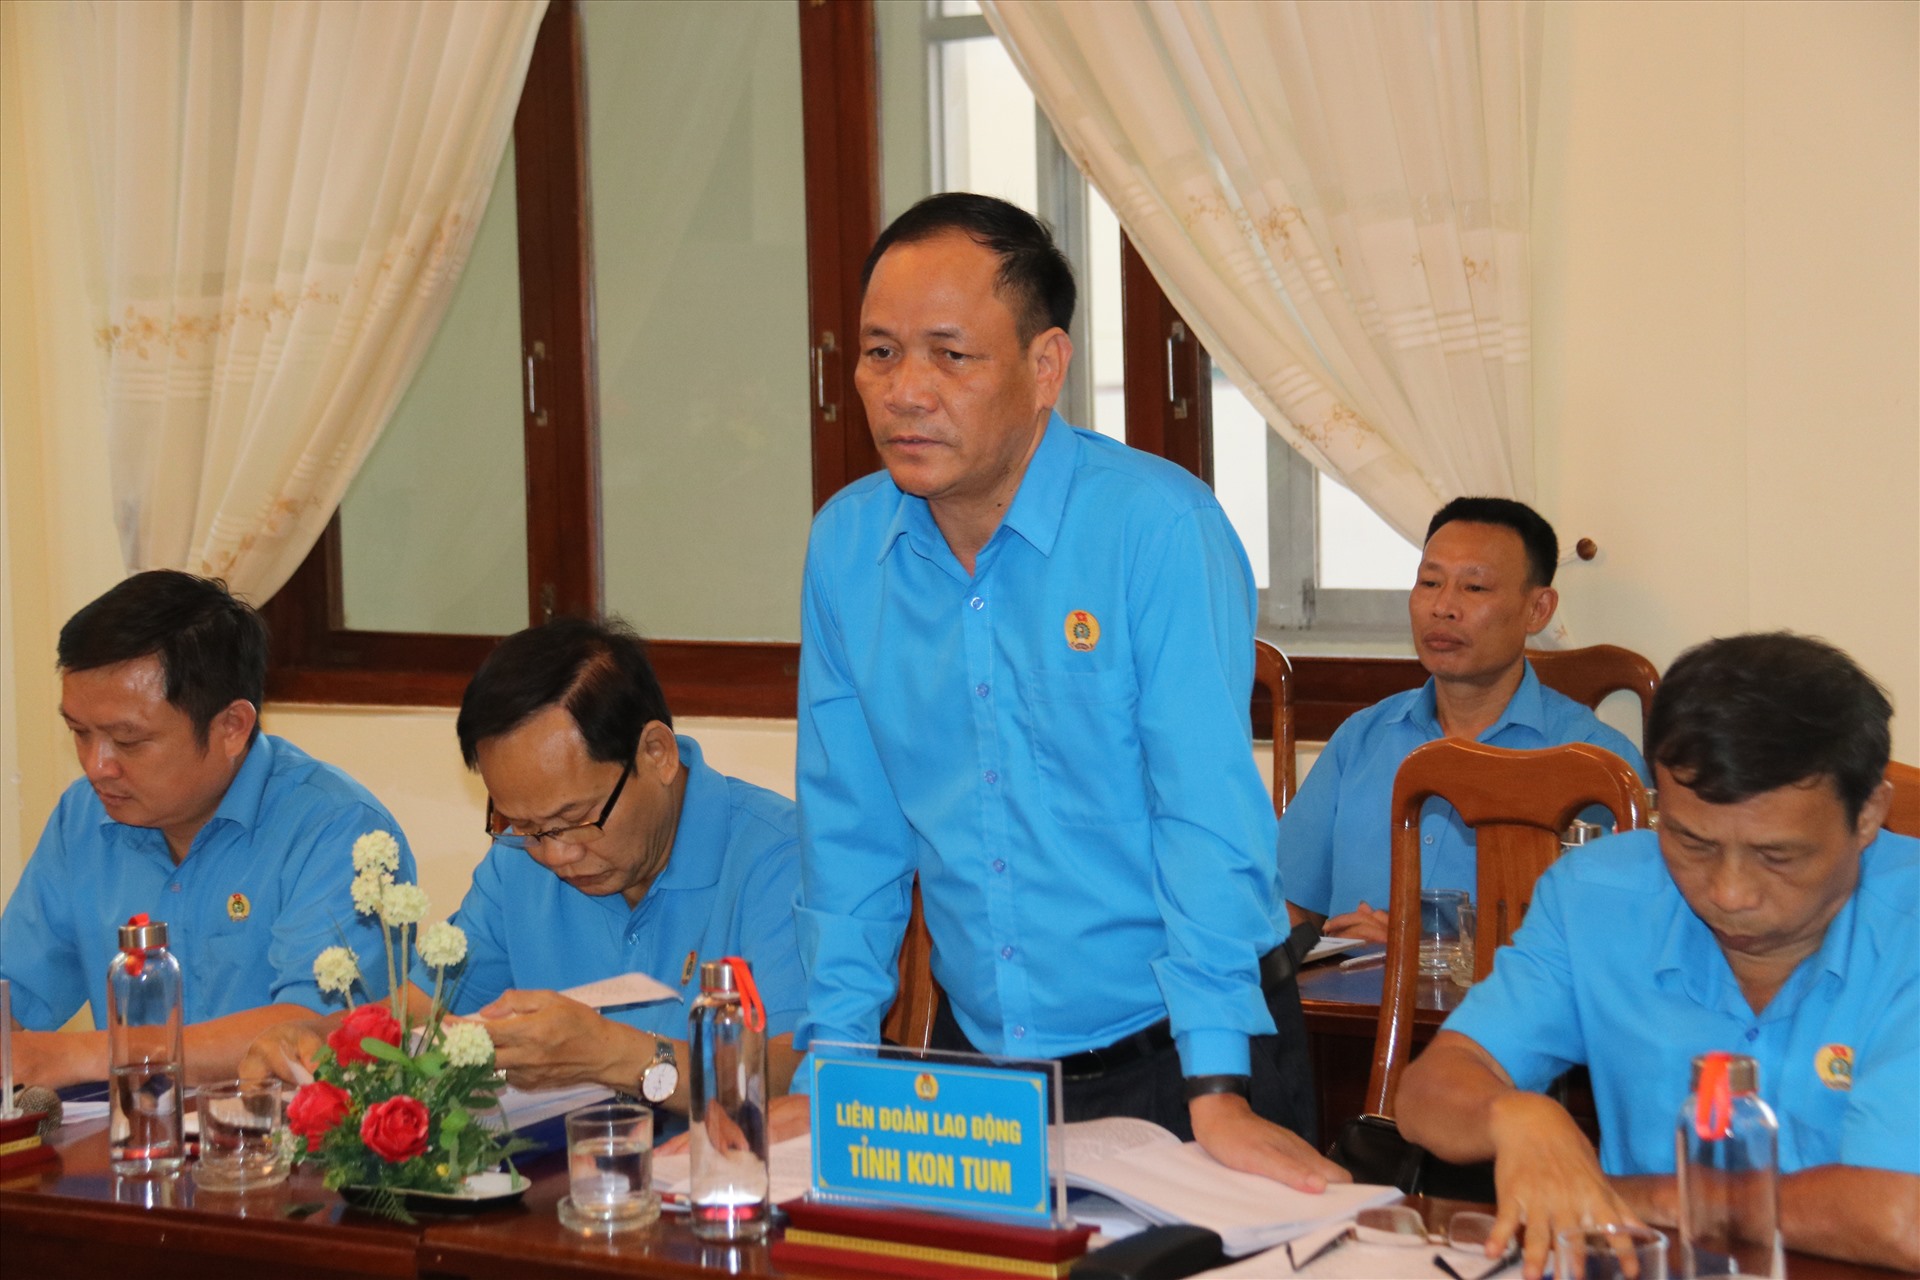 Lãnh đạo LĐLĐ tỉnh Kon Tum kiến nghị một số nội dung liên quan đến công tác chuẩn bị đại hội điểm khu vực Nam Trung Bộ và Tây Nguyên. Ảnh: Hữu Long